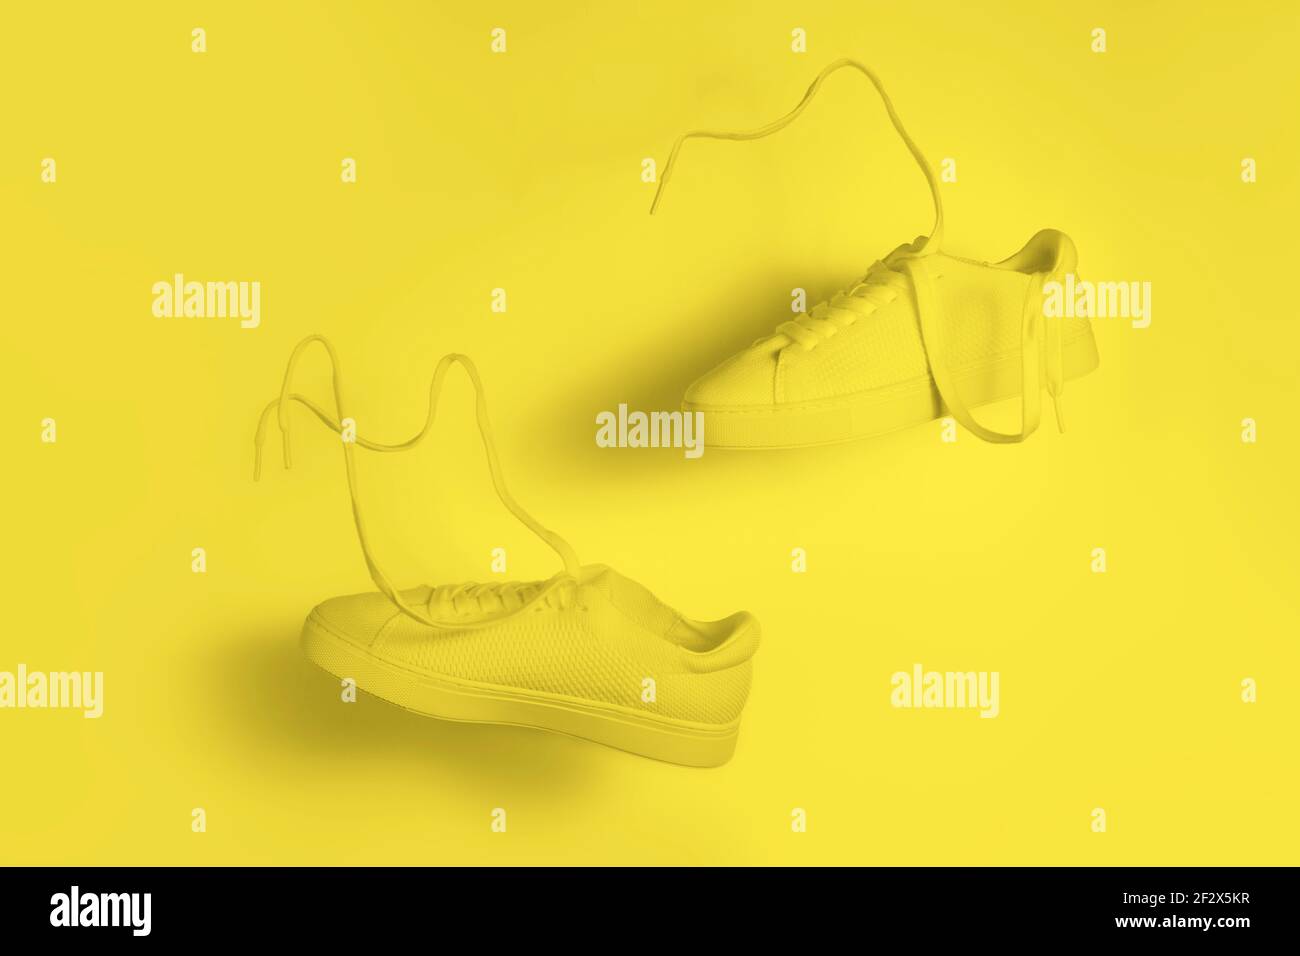 il concetto di leggerezza e leggerezza. un paio di sneaker gialle che volano in aria su uno sfondo giallo Foto Stock